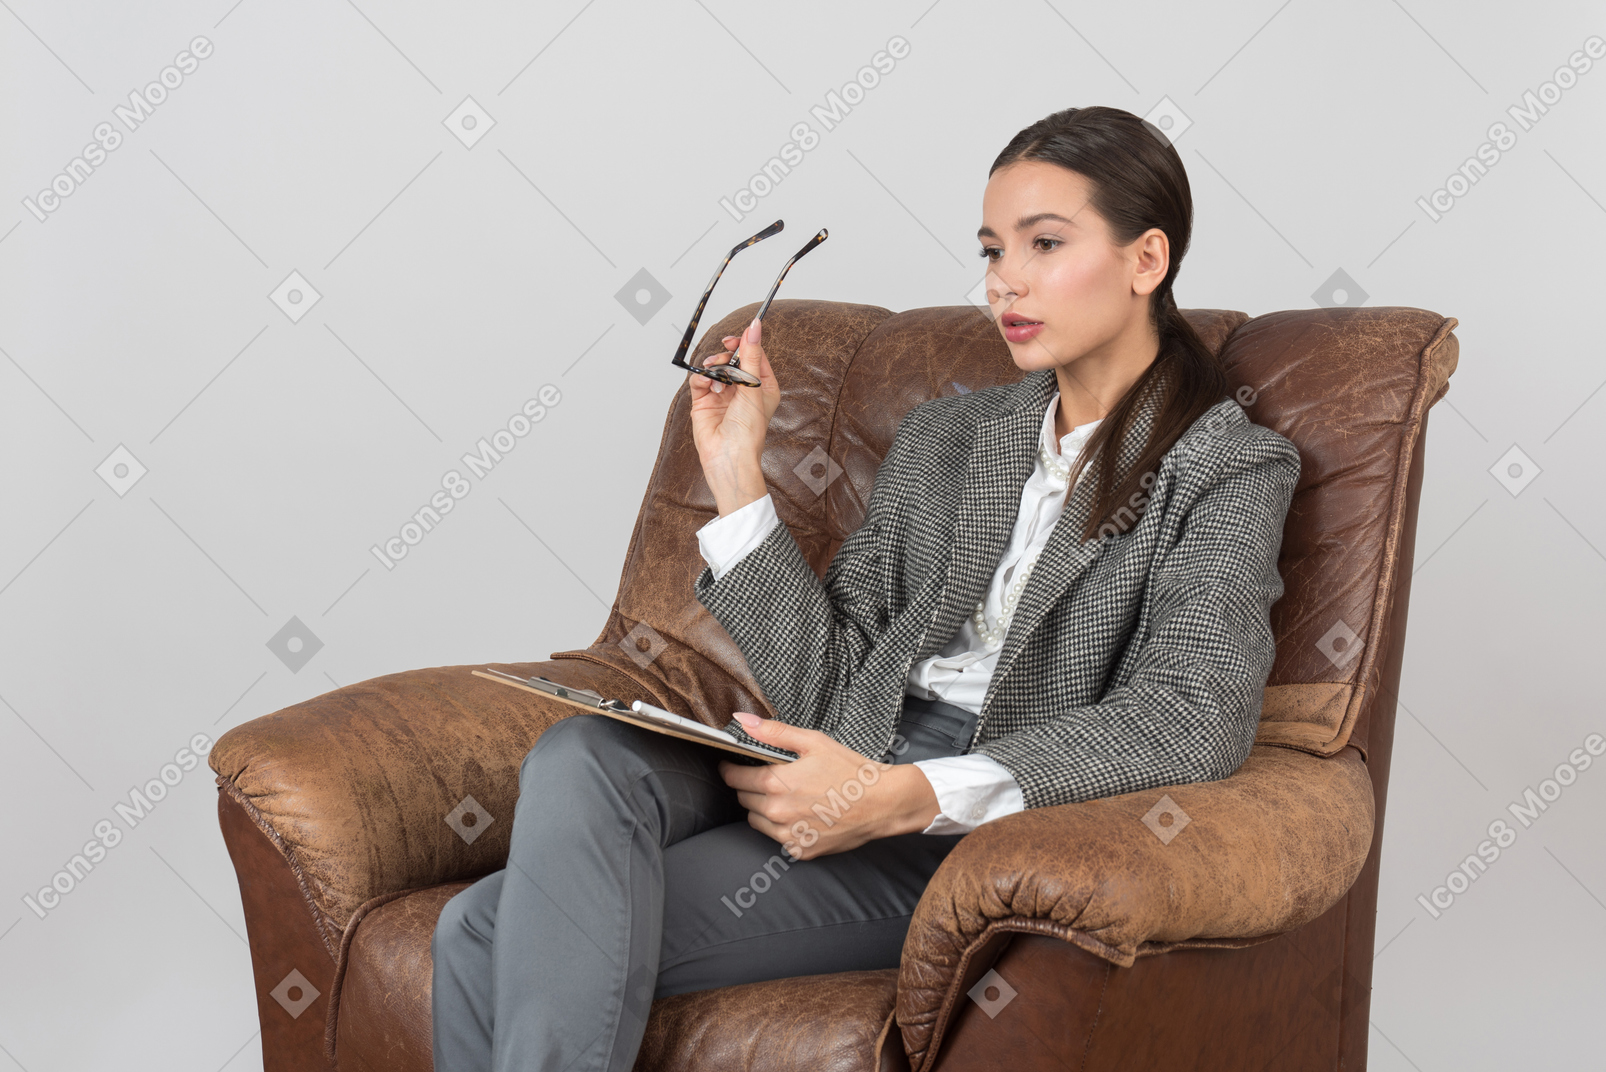 의자에 앉아 안경을 들고 산만 한 젊은 여성 심리학자